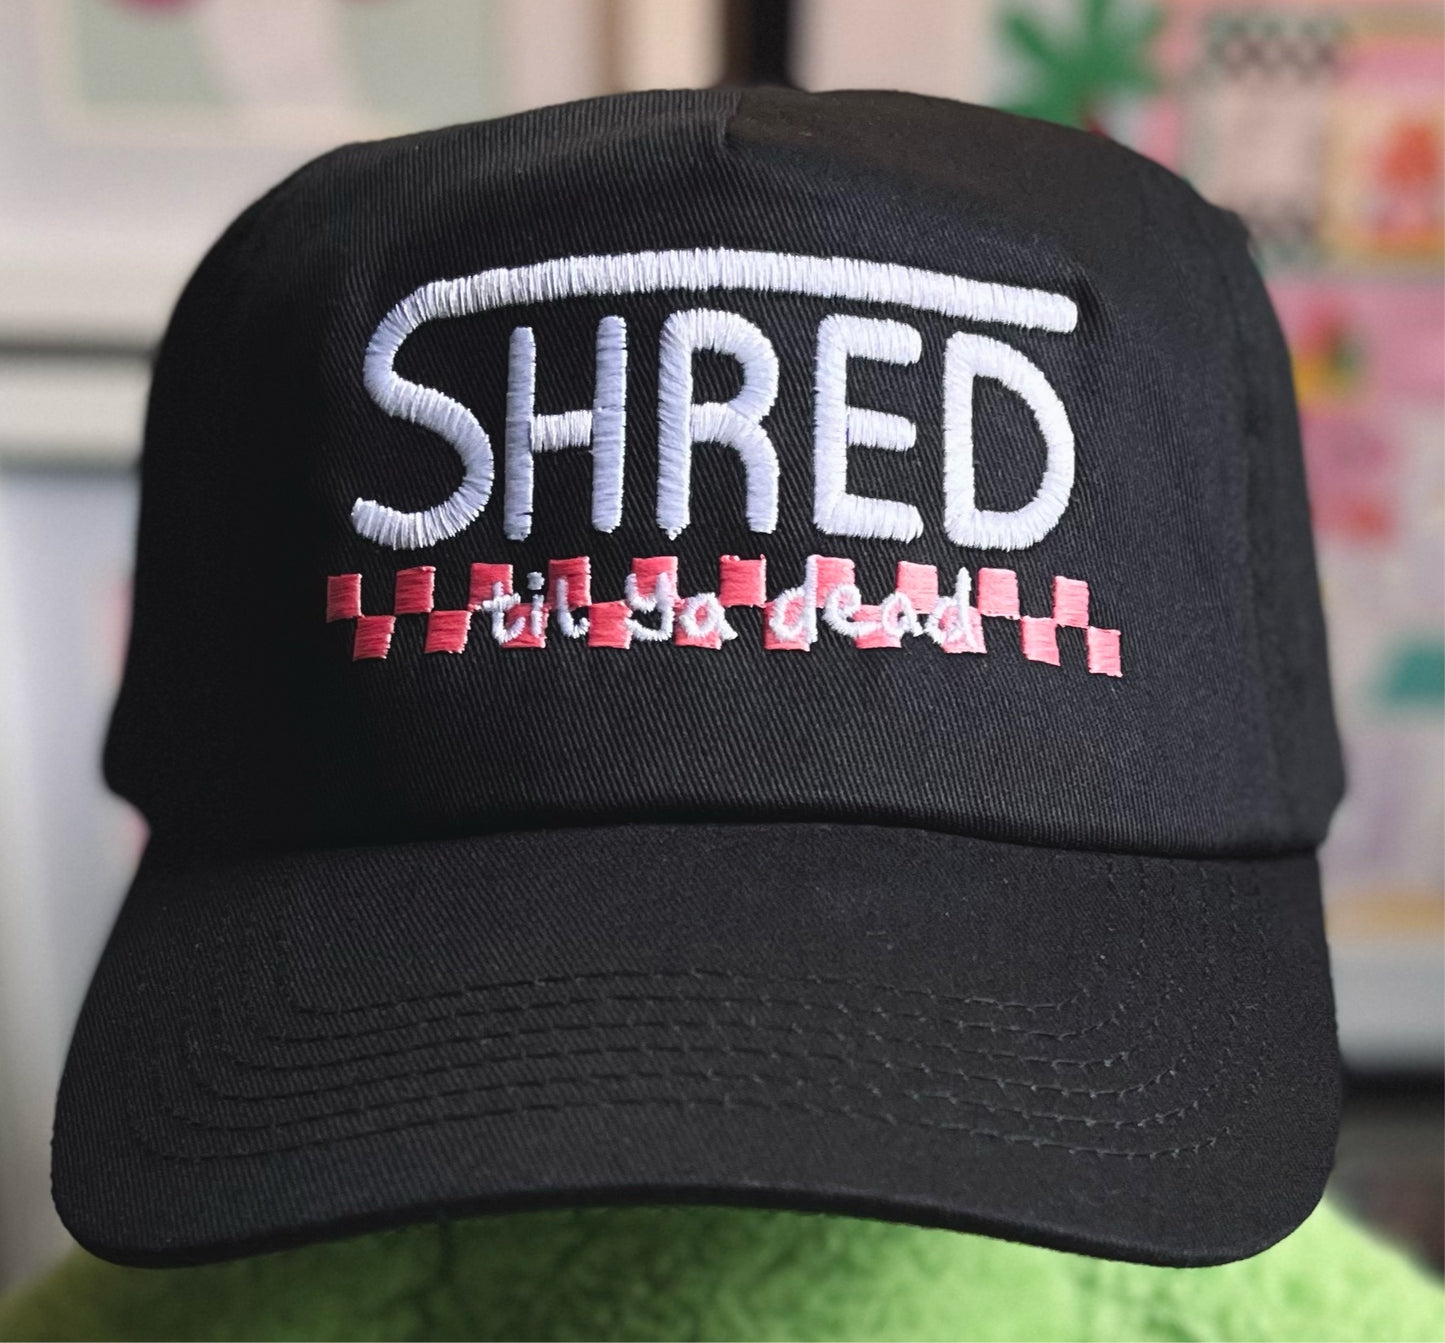 SHRED til ya dead embroidered hat